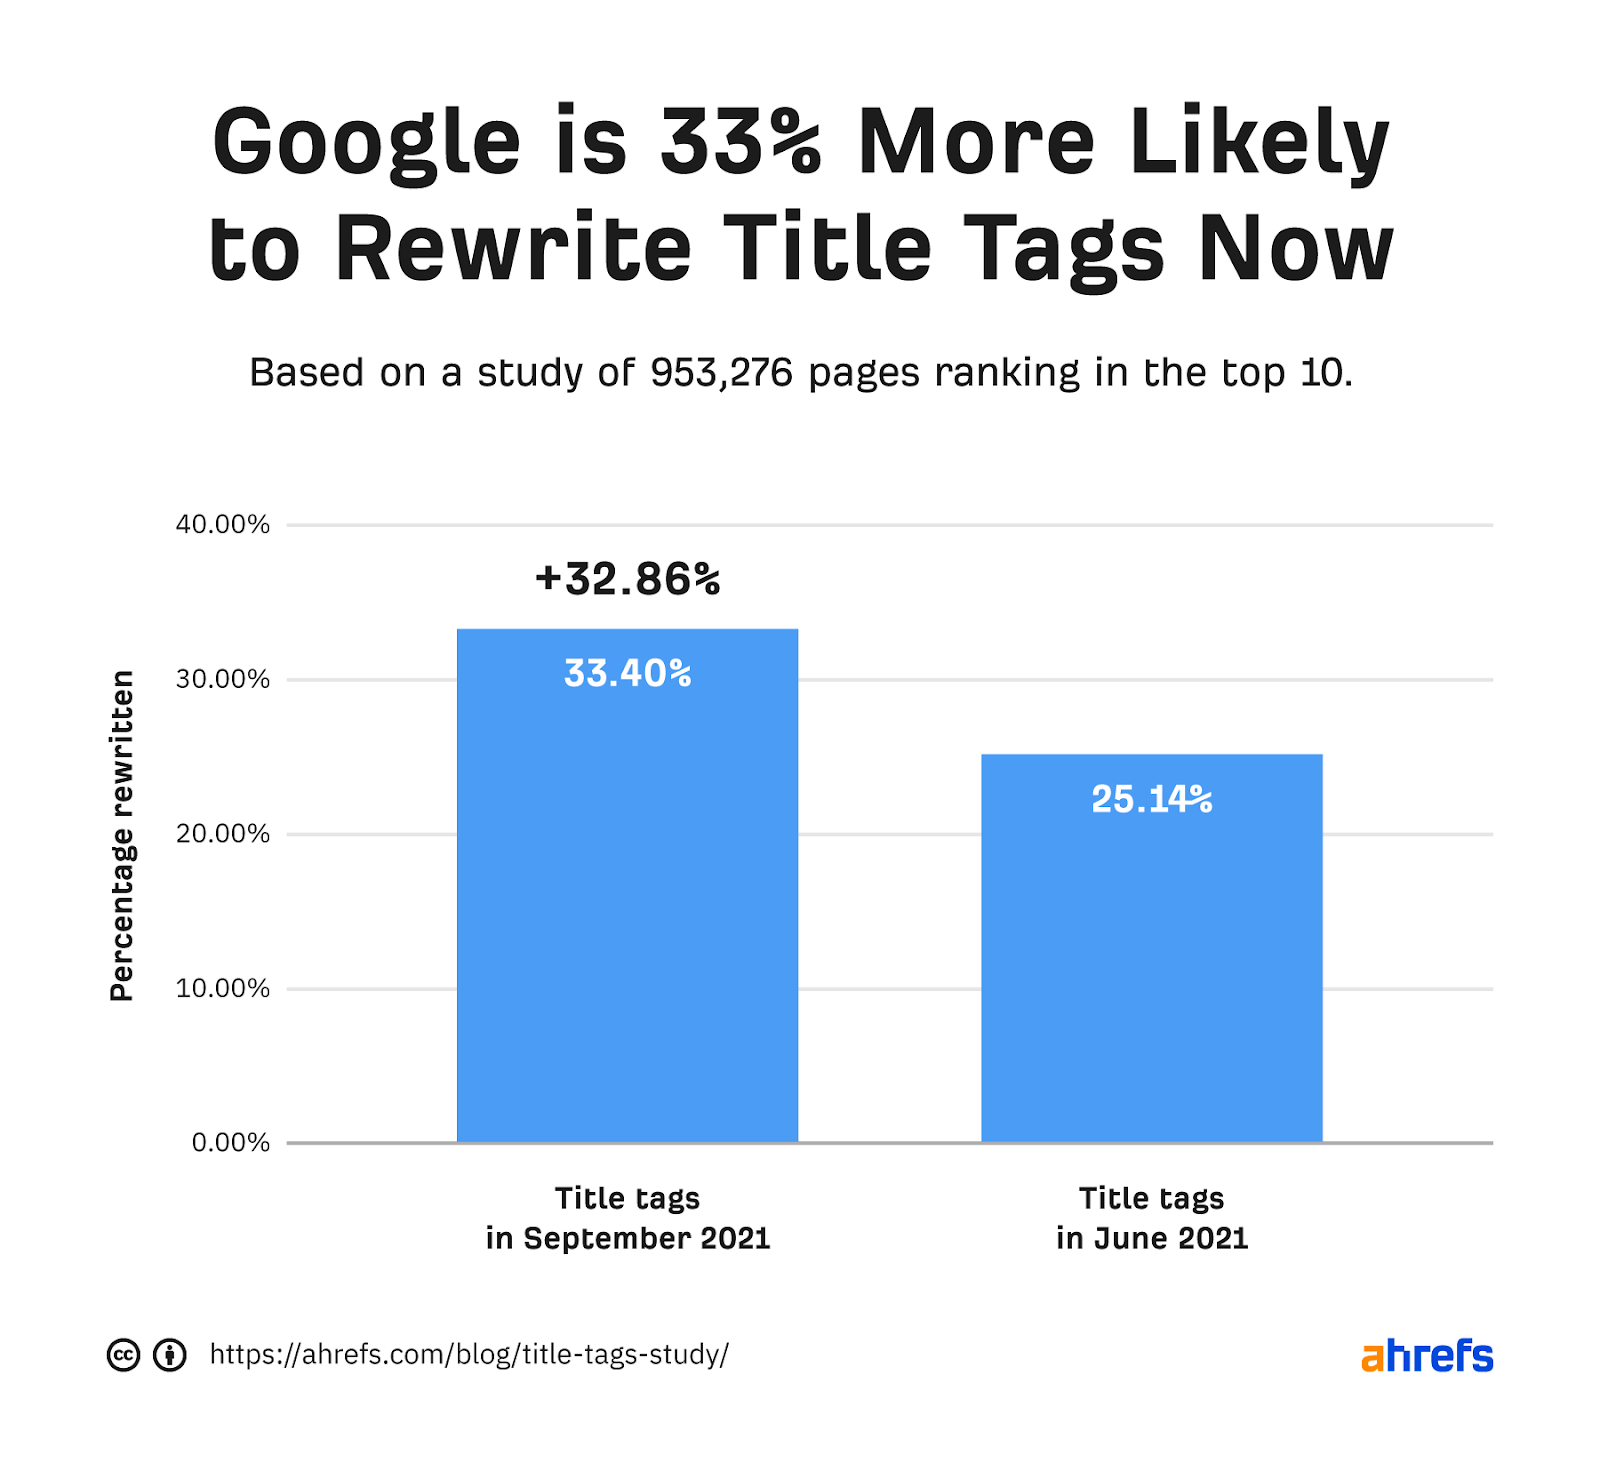 نمودار میله ای که نشان می دهد گوگل در حال حاضر 33 درصد بیشتر احتمال دارد که برچسب های عنوان را بازنویسی کند